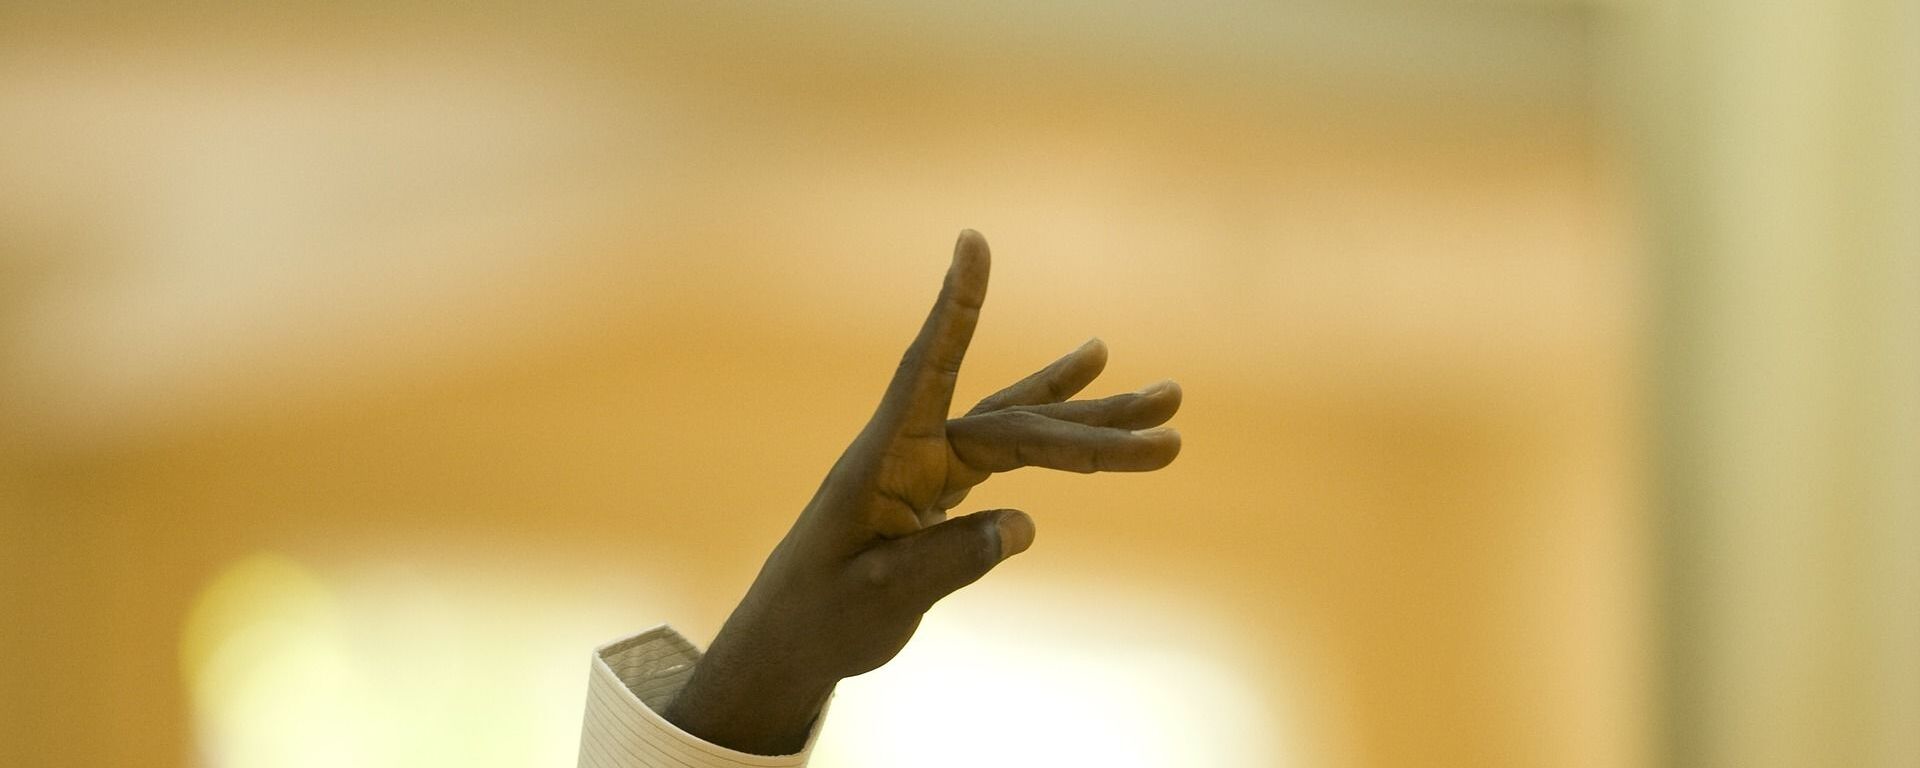 La mano de un afrodescendiente (imagen referencial) - Sputnik Mundo, 1920, 20.03.2021